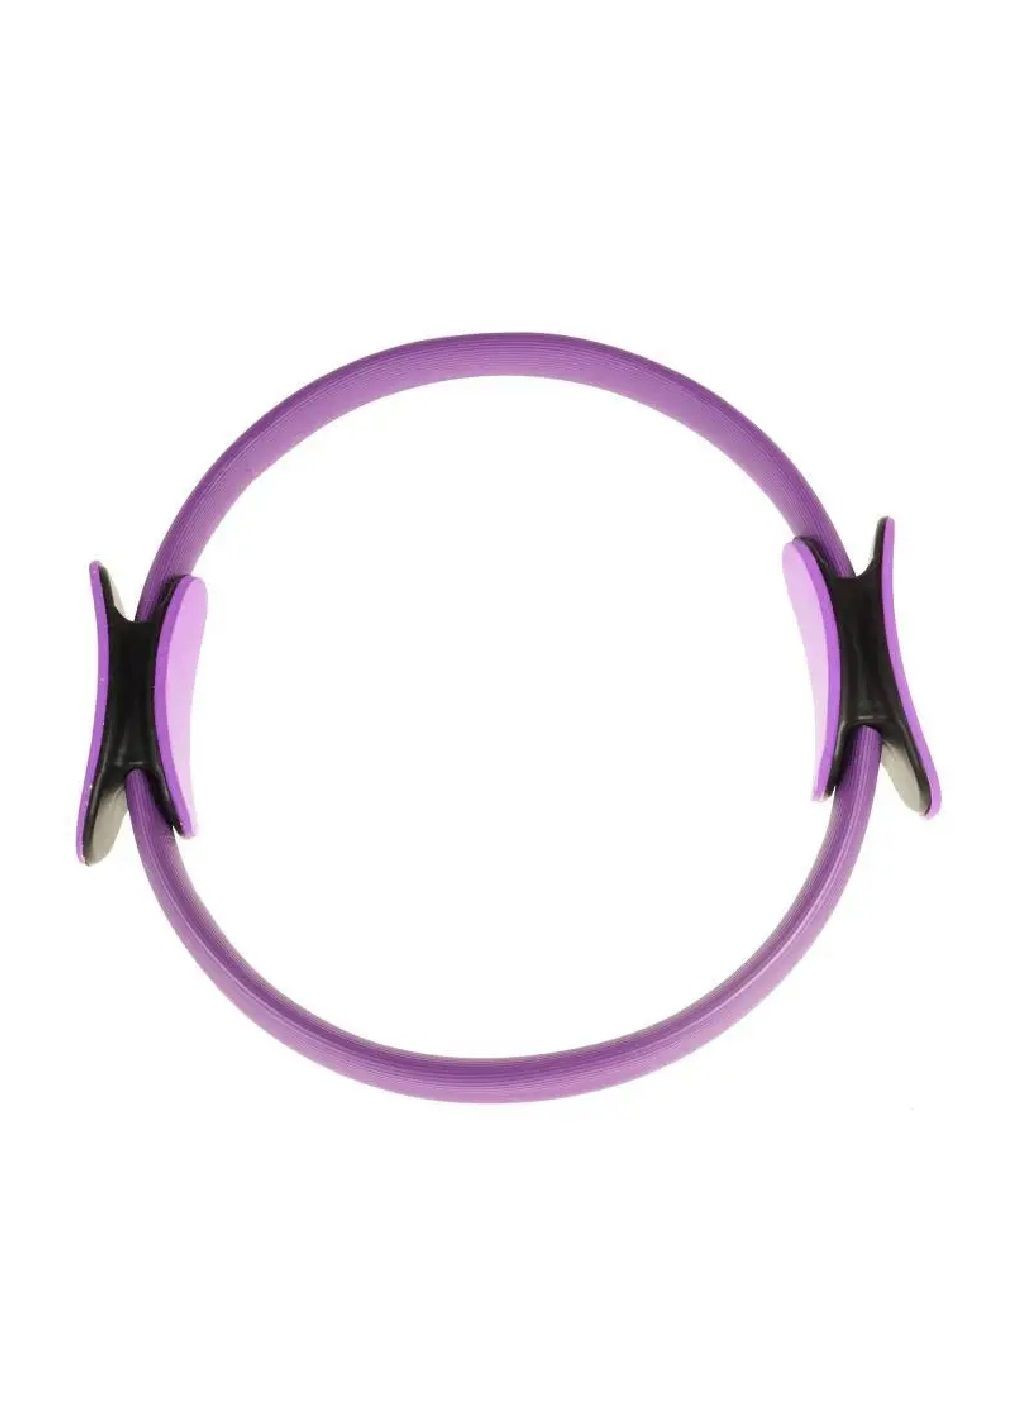 Изотоническое кольцо тренажер для пилатеса фитнеса спорта тренировок пластик 39х39 см (476908-Prob) Фиолетовое Unbranded (292549903)